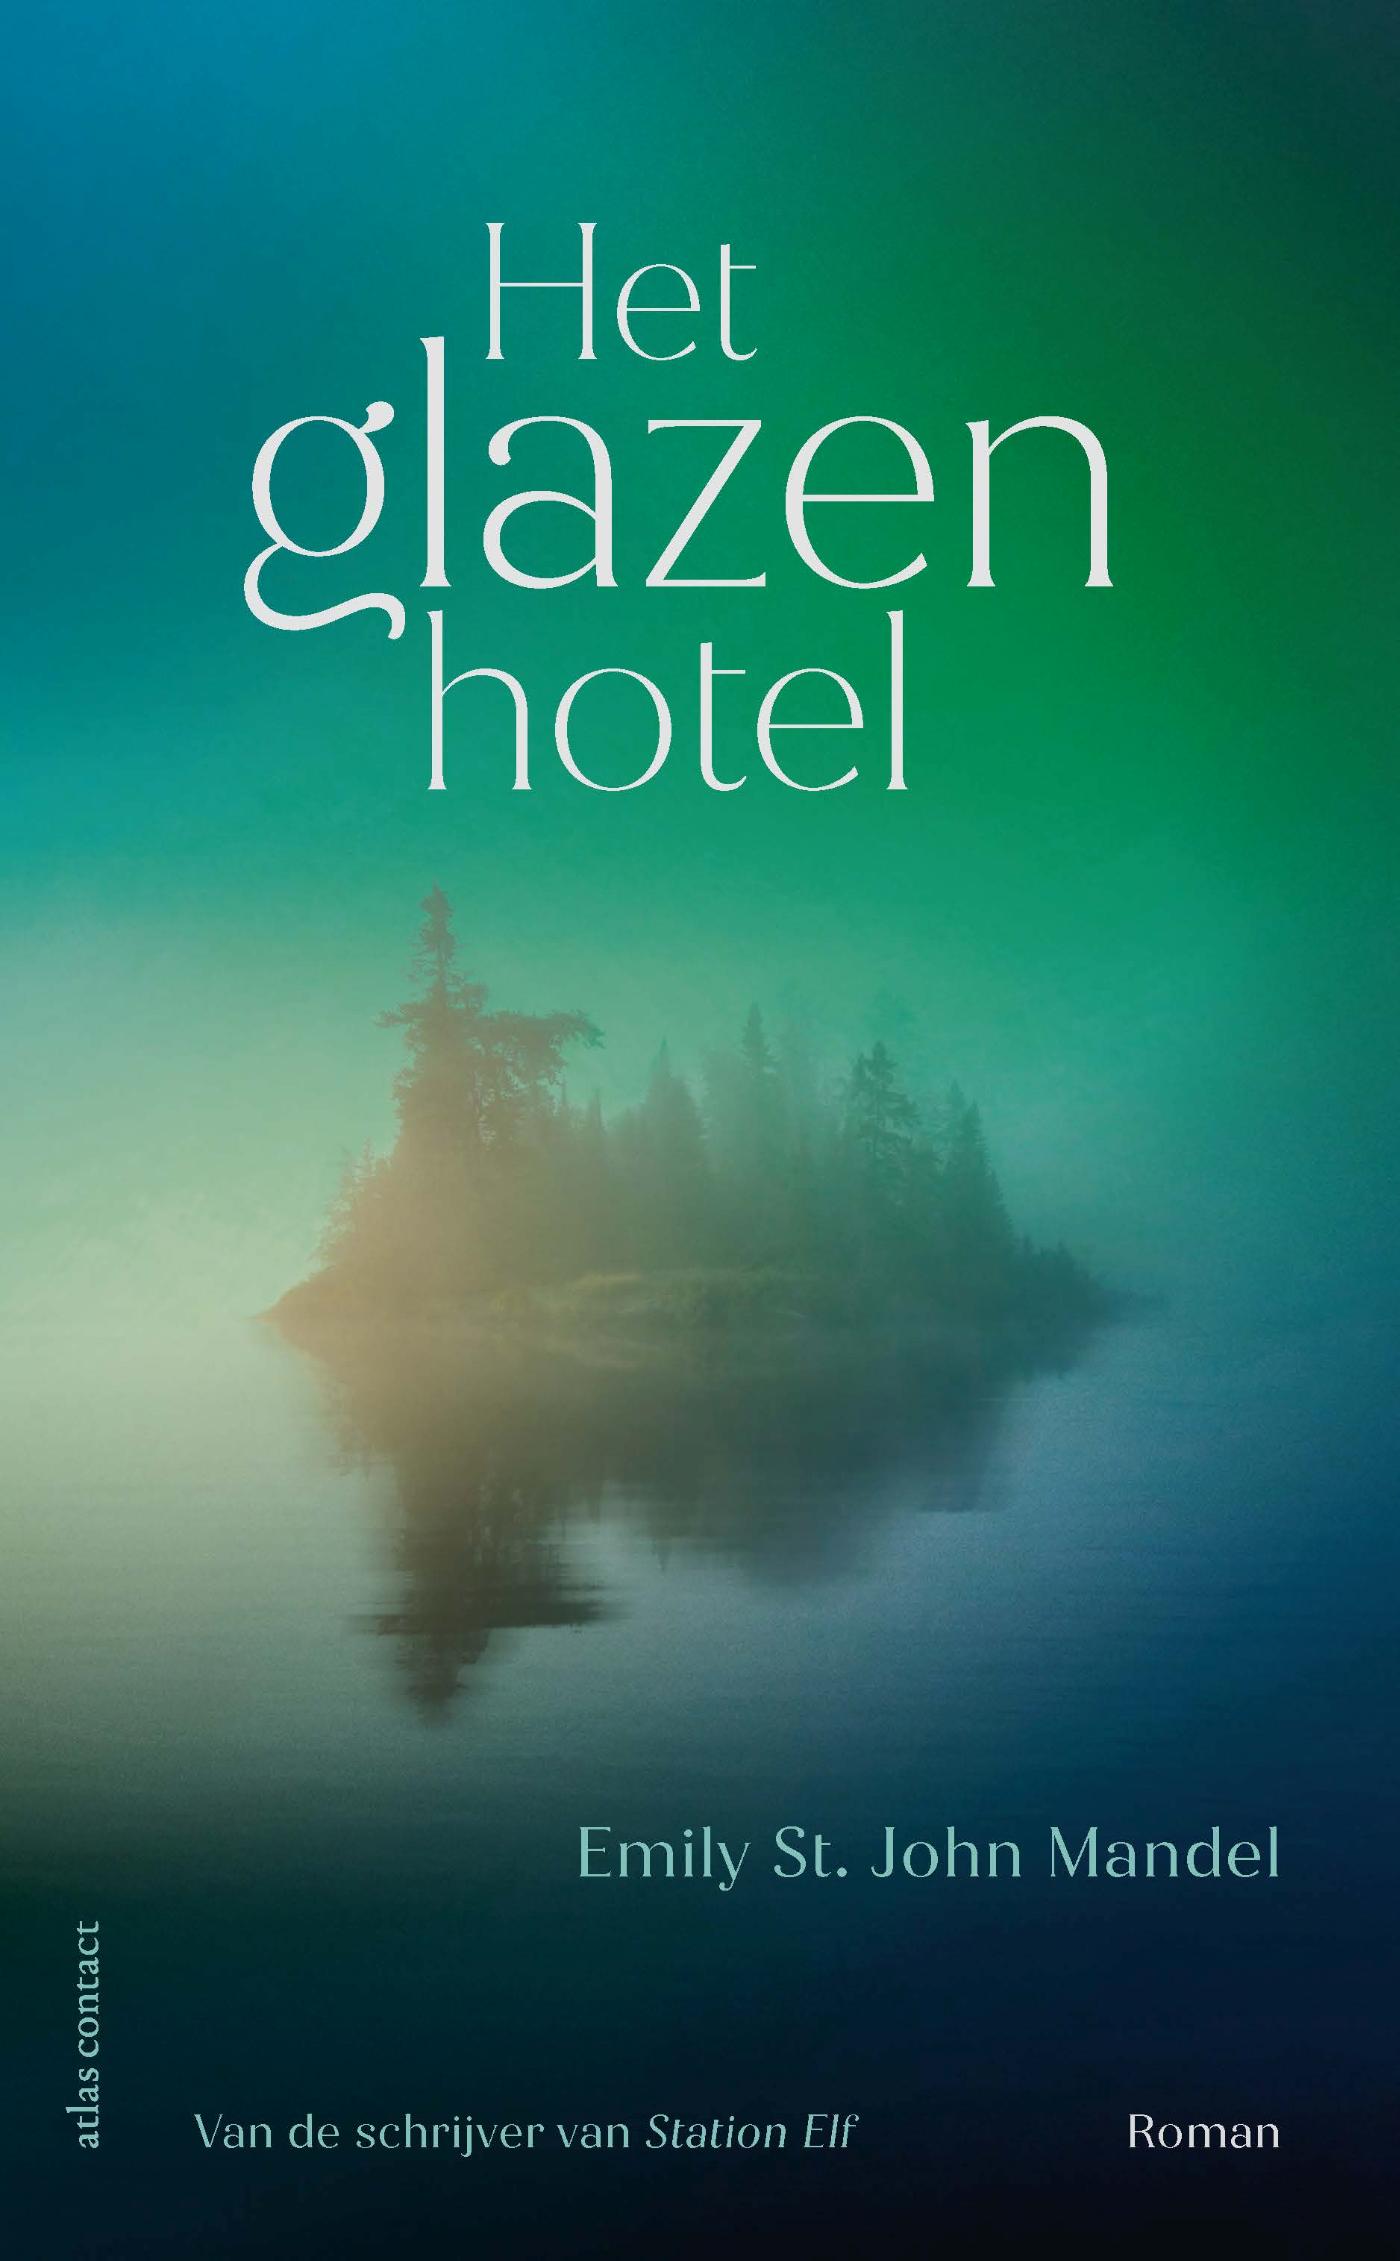 Het glazen hotel (Ebook)